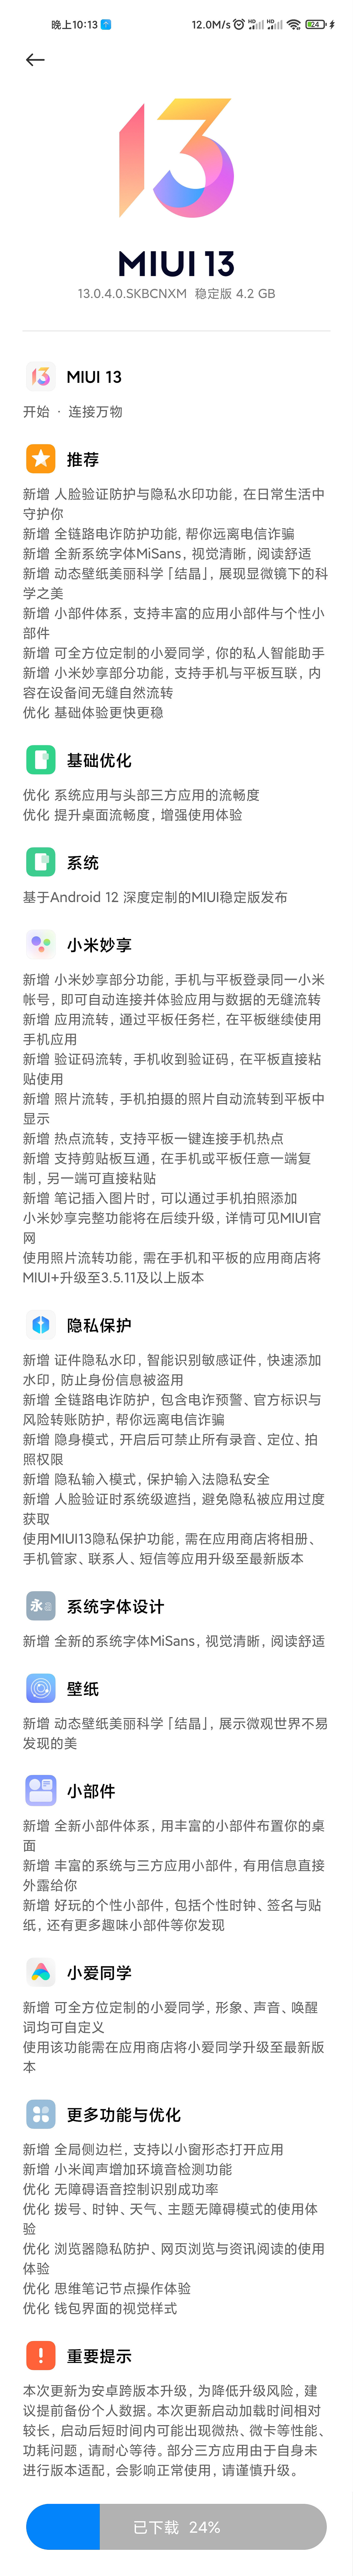 小米 11 正式推送 MIUI 13.0.4.0 稳定版 - 2